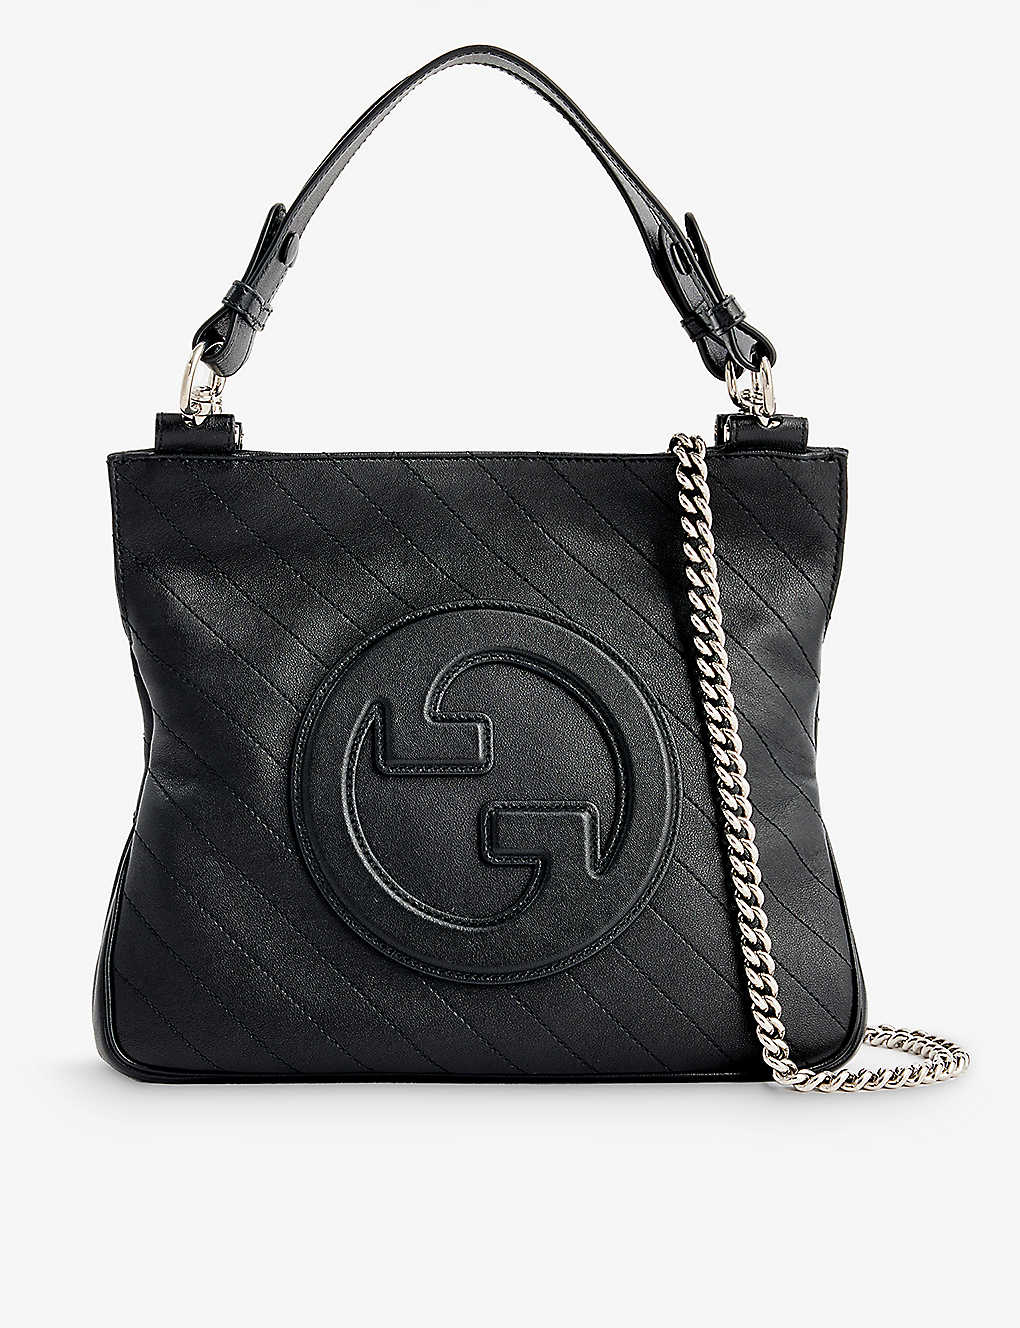 Gucci Blondie Branded Leather Tote Bag In Black